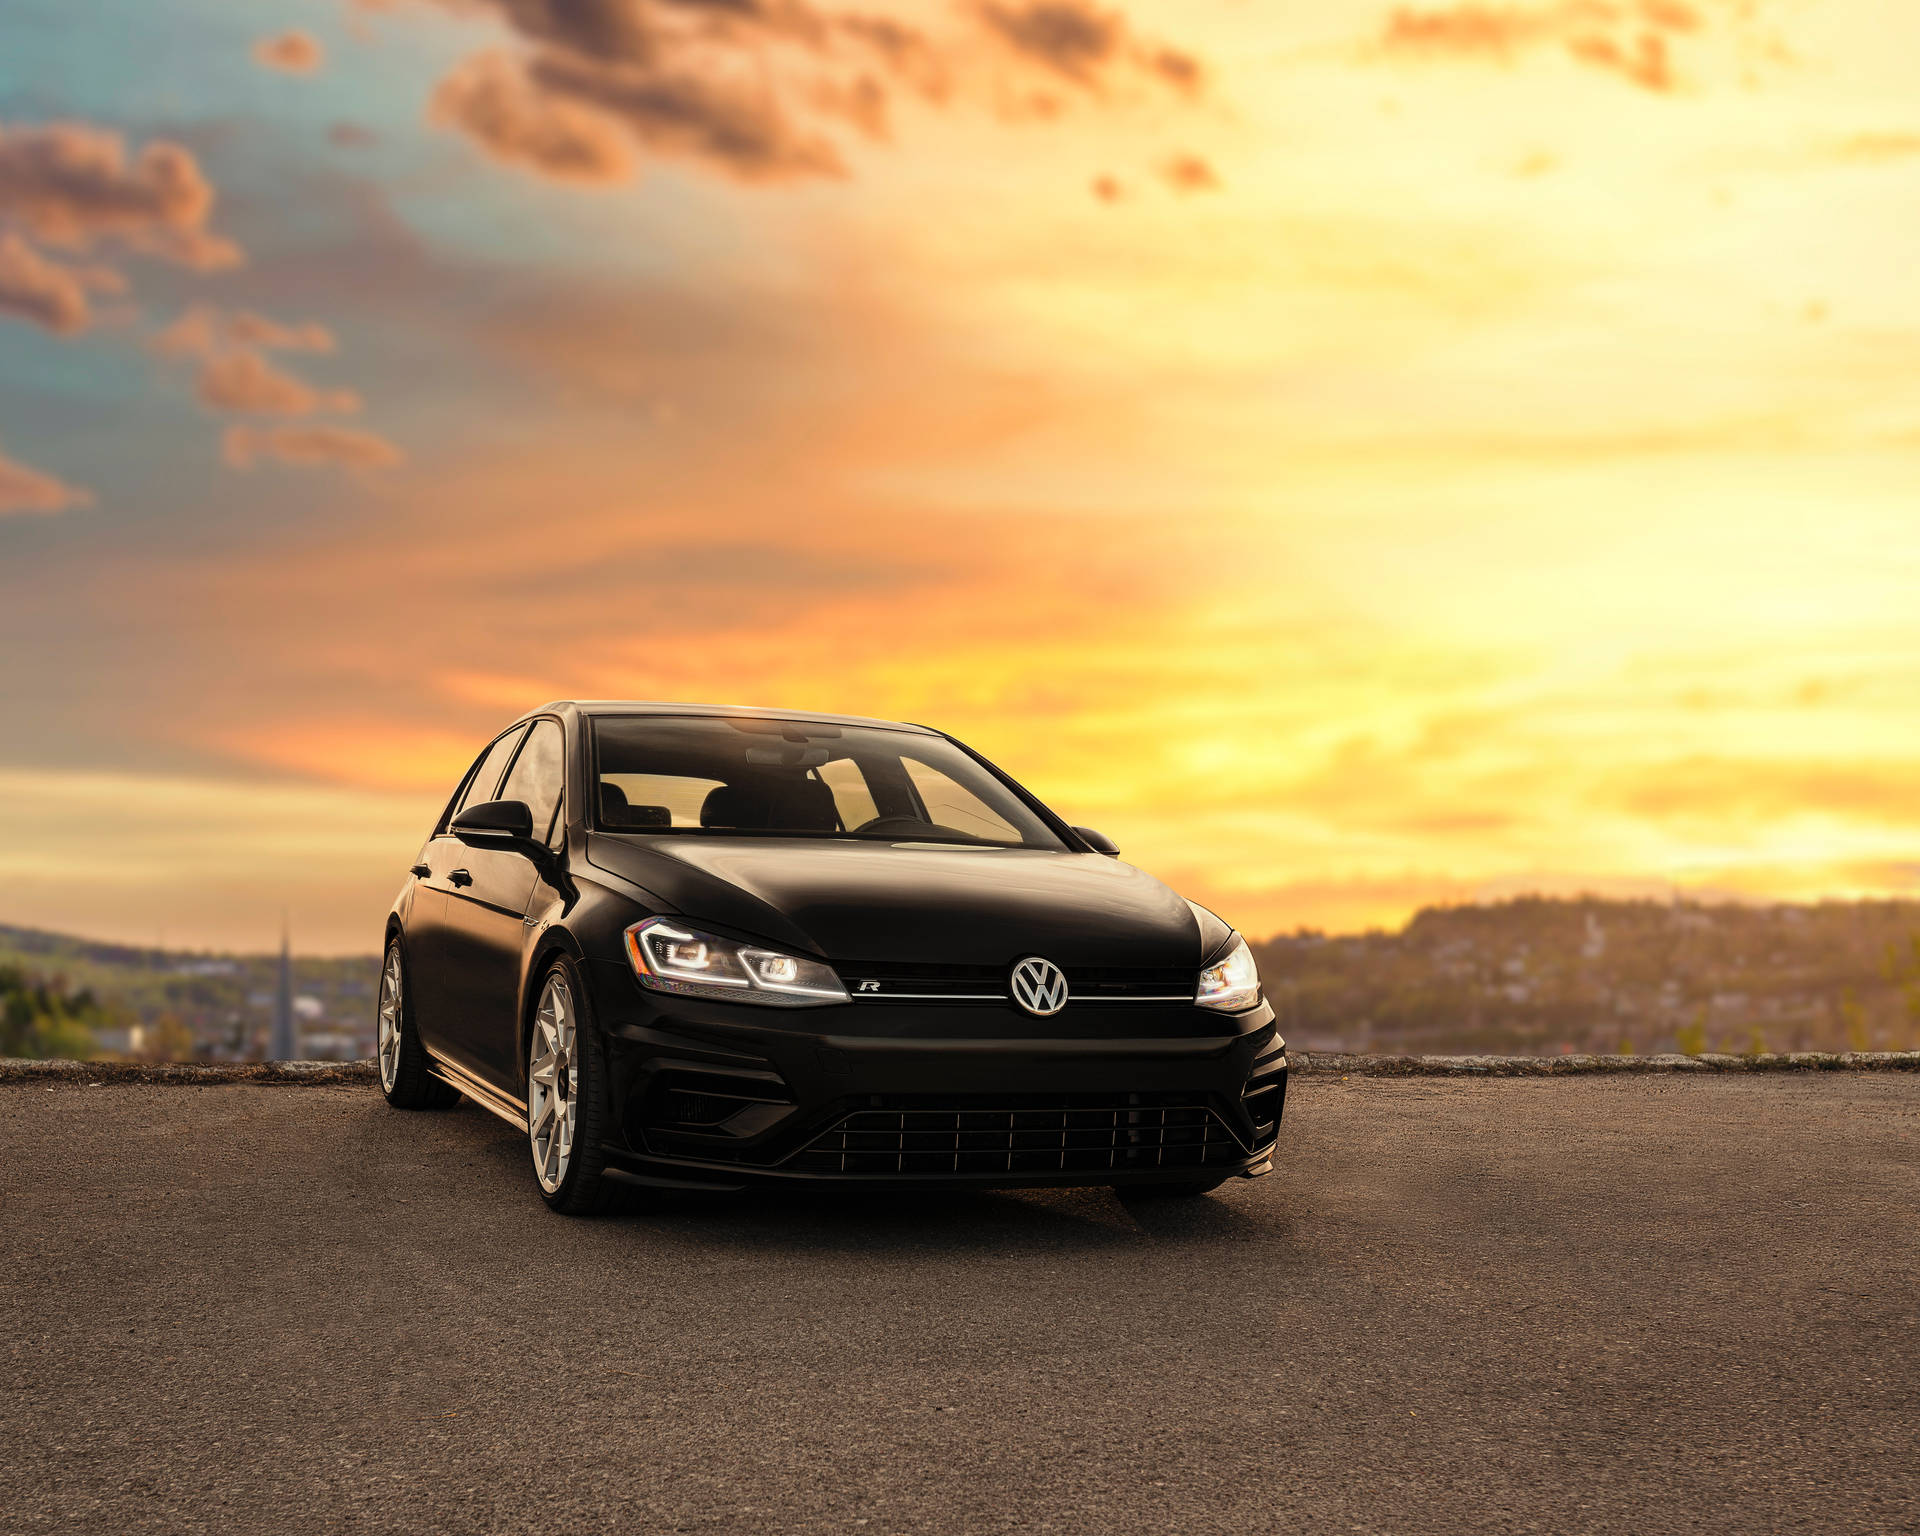 Volkswagen R - Putting Power in Your Drive Wallpaper